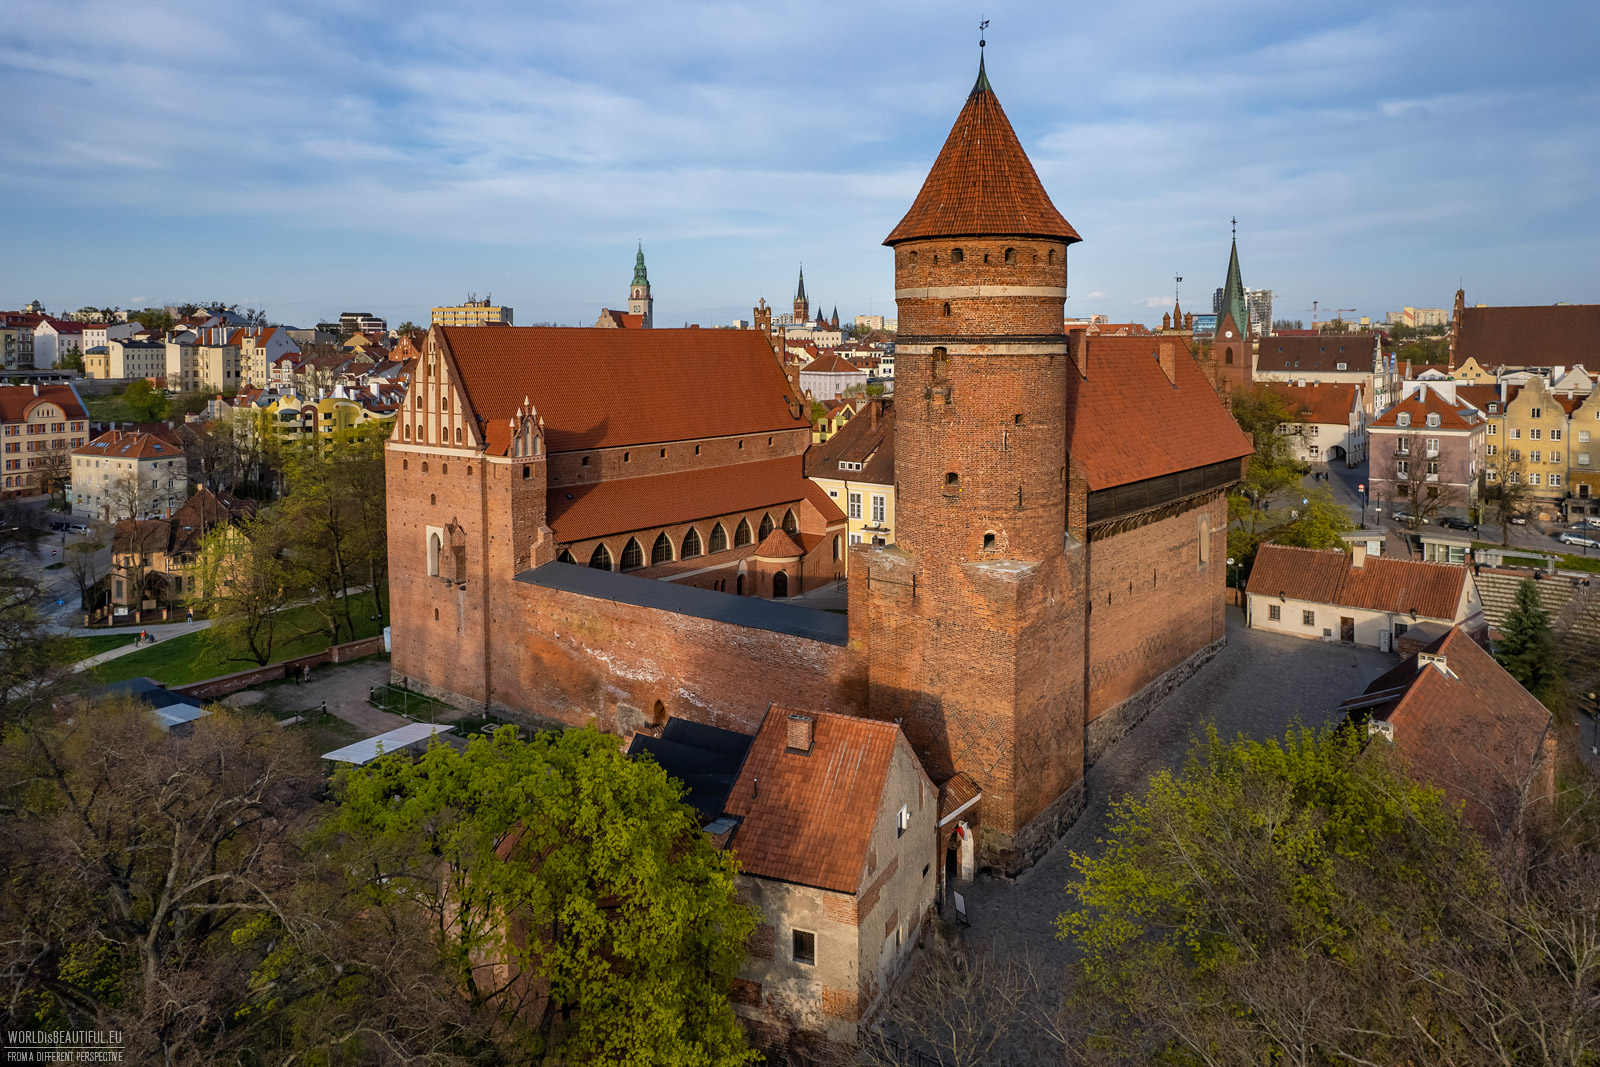 Wiosenny widok na Zamek w Olsztynie